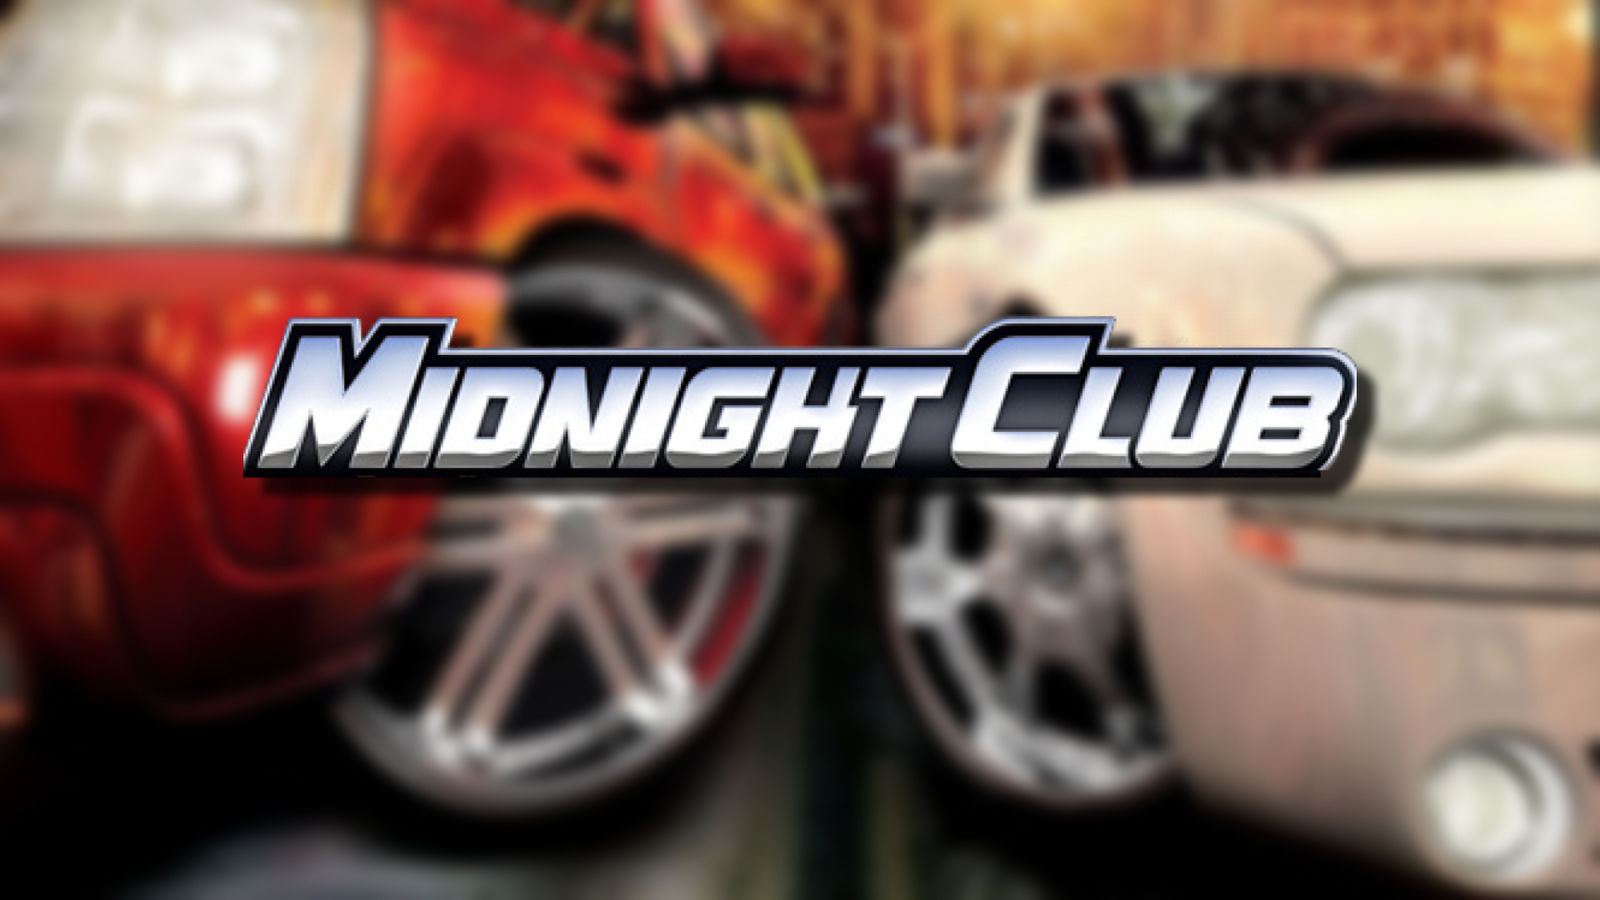 Si Midnight Club está regresando, ya era hora: Take-Two está sentado en una joya de franquicia.